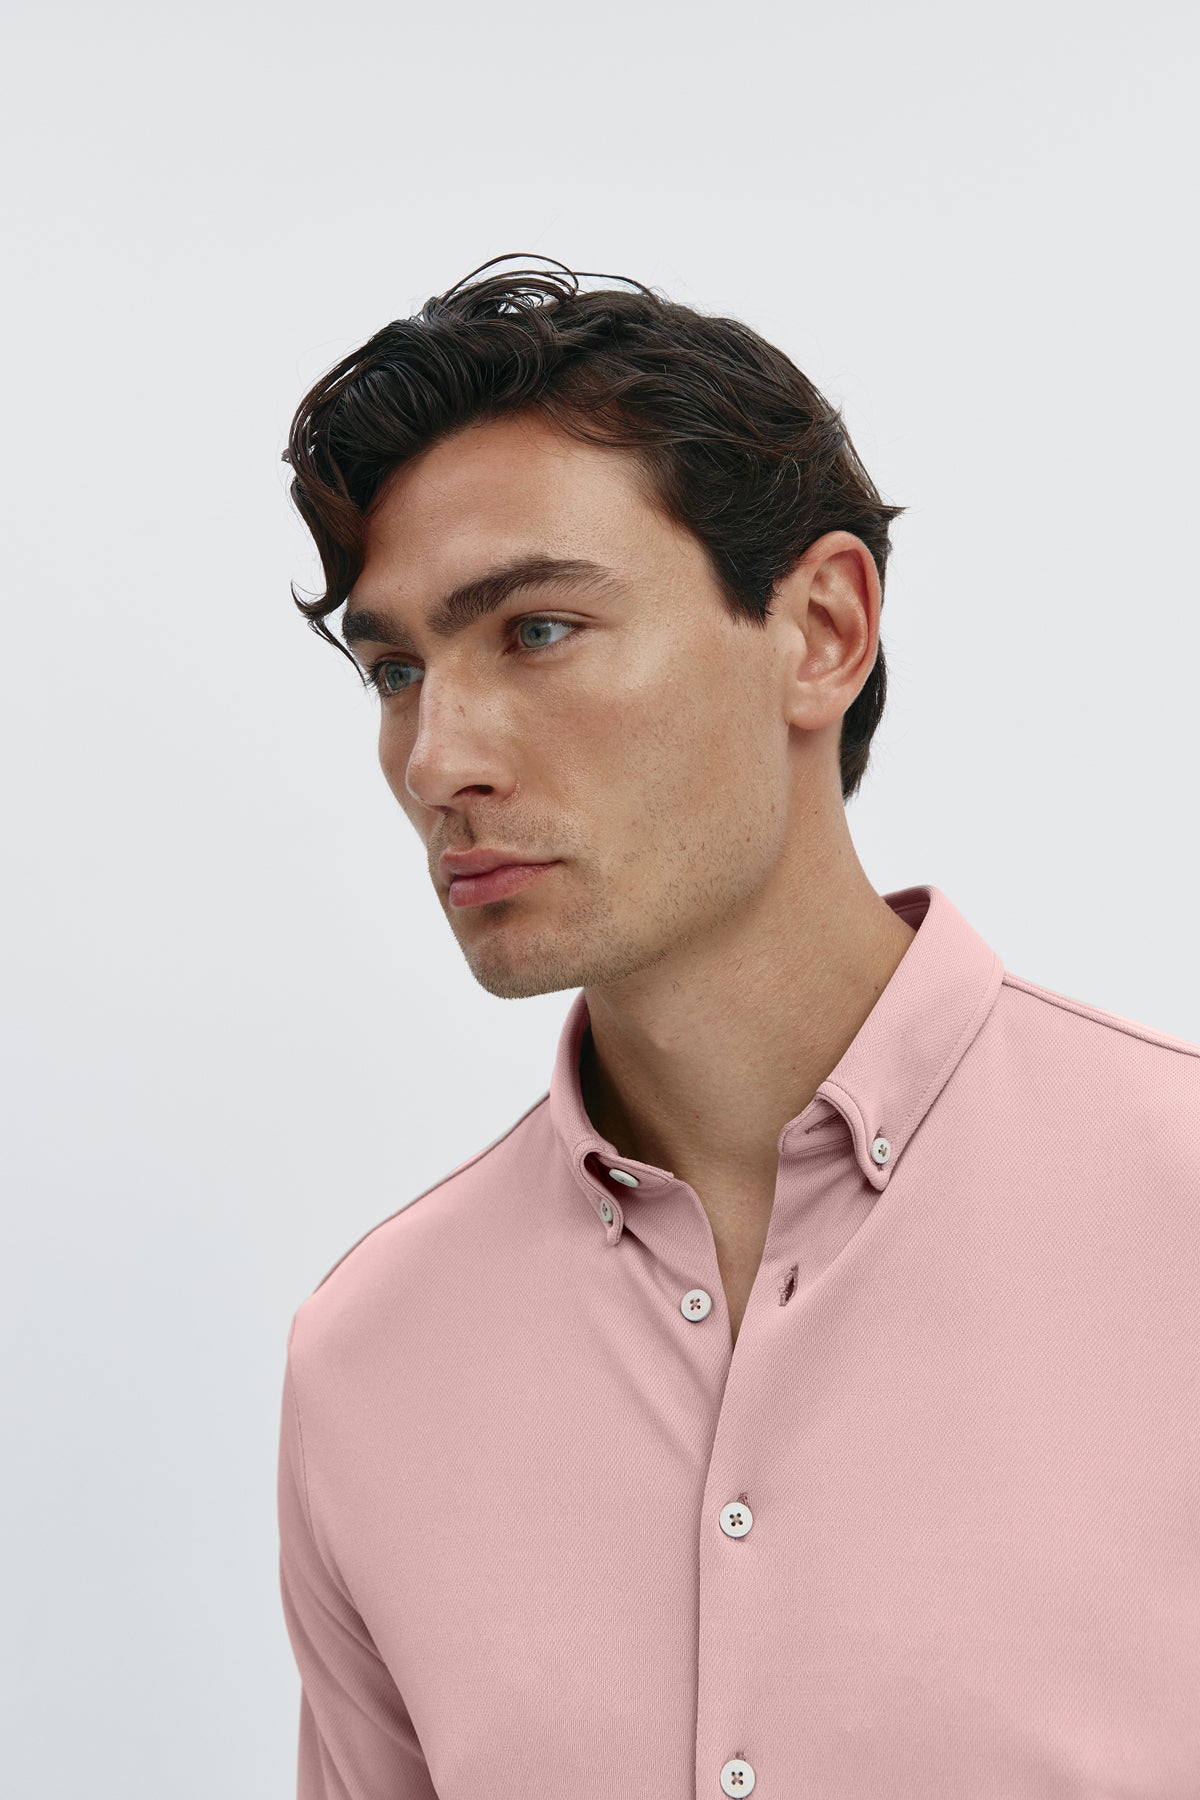 Camisa casual rosa salinas para hombre sin arrugas ni manchas. Manga larga, antiarrugas y antimanchas. Foto retrato